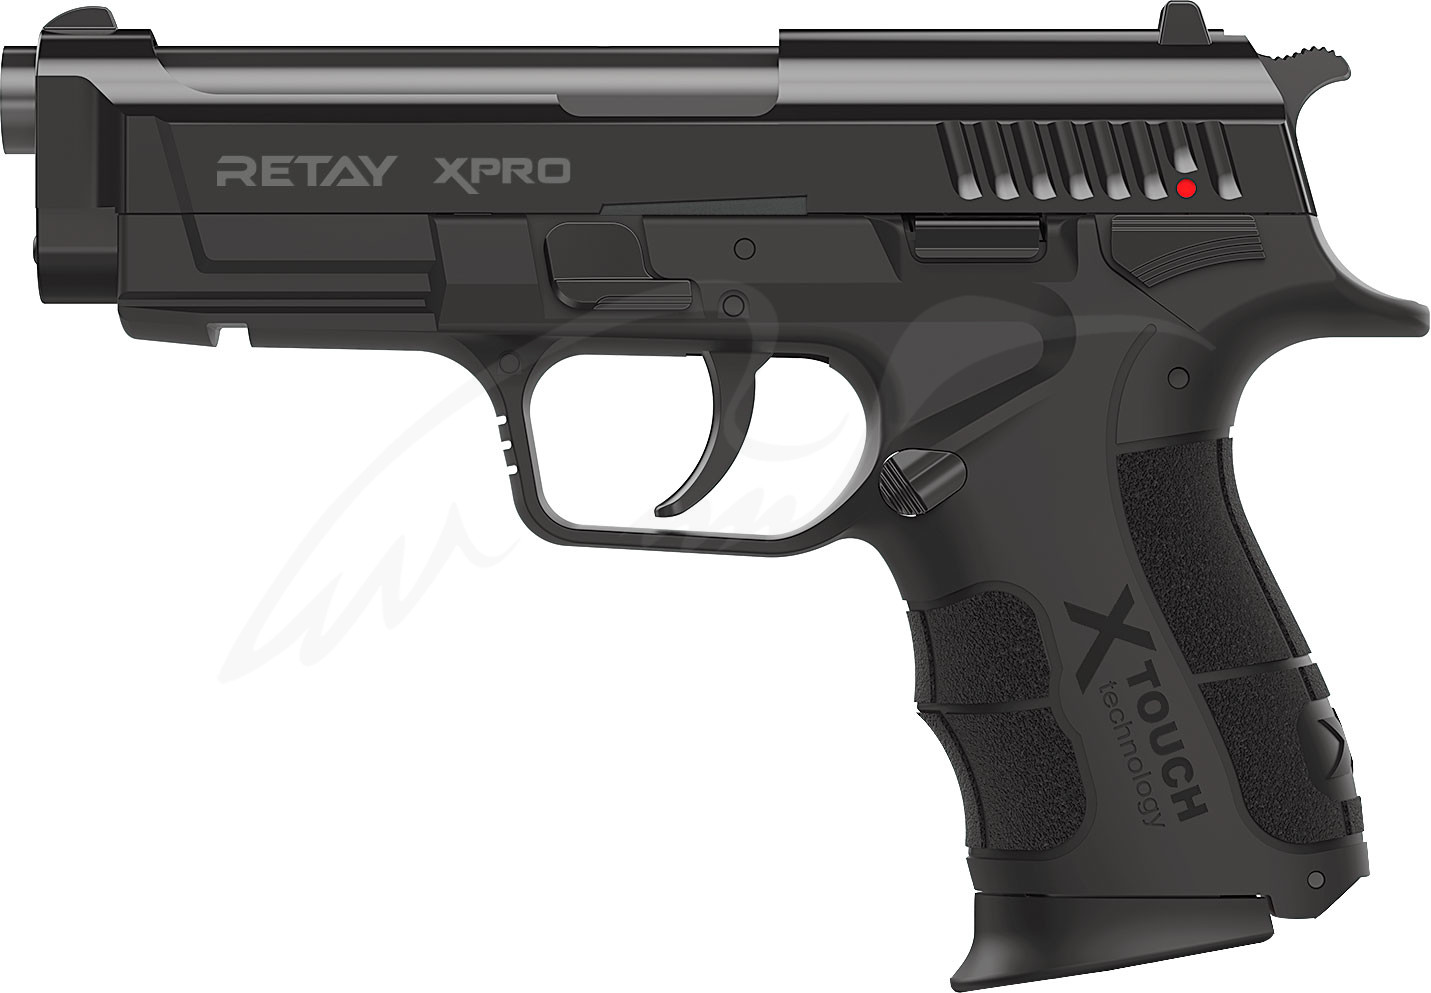 RETAY XPRO BLANK GUN